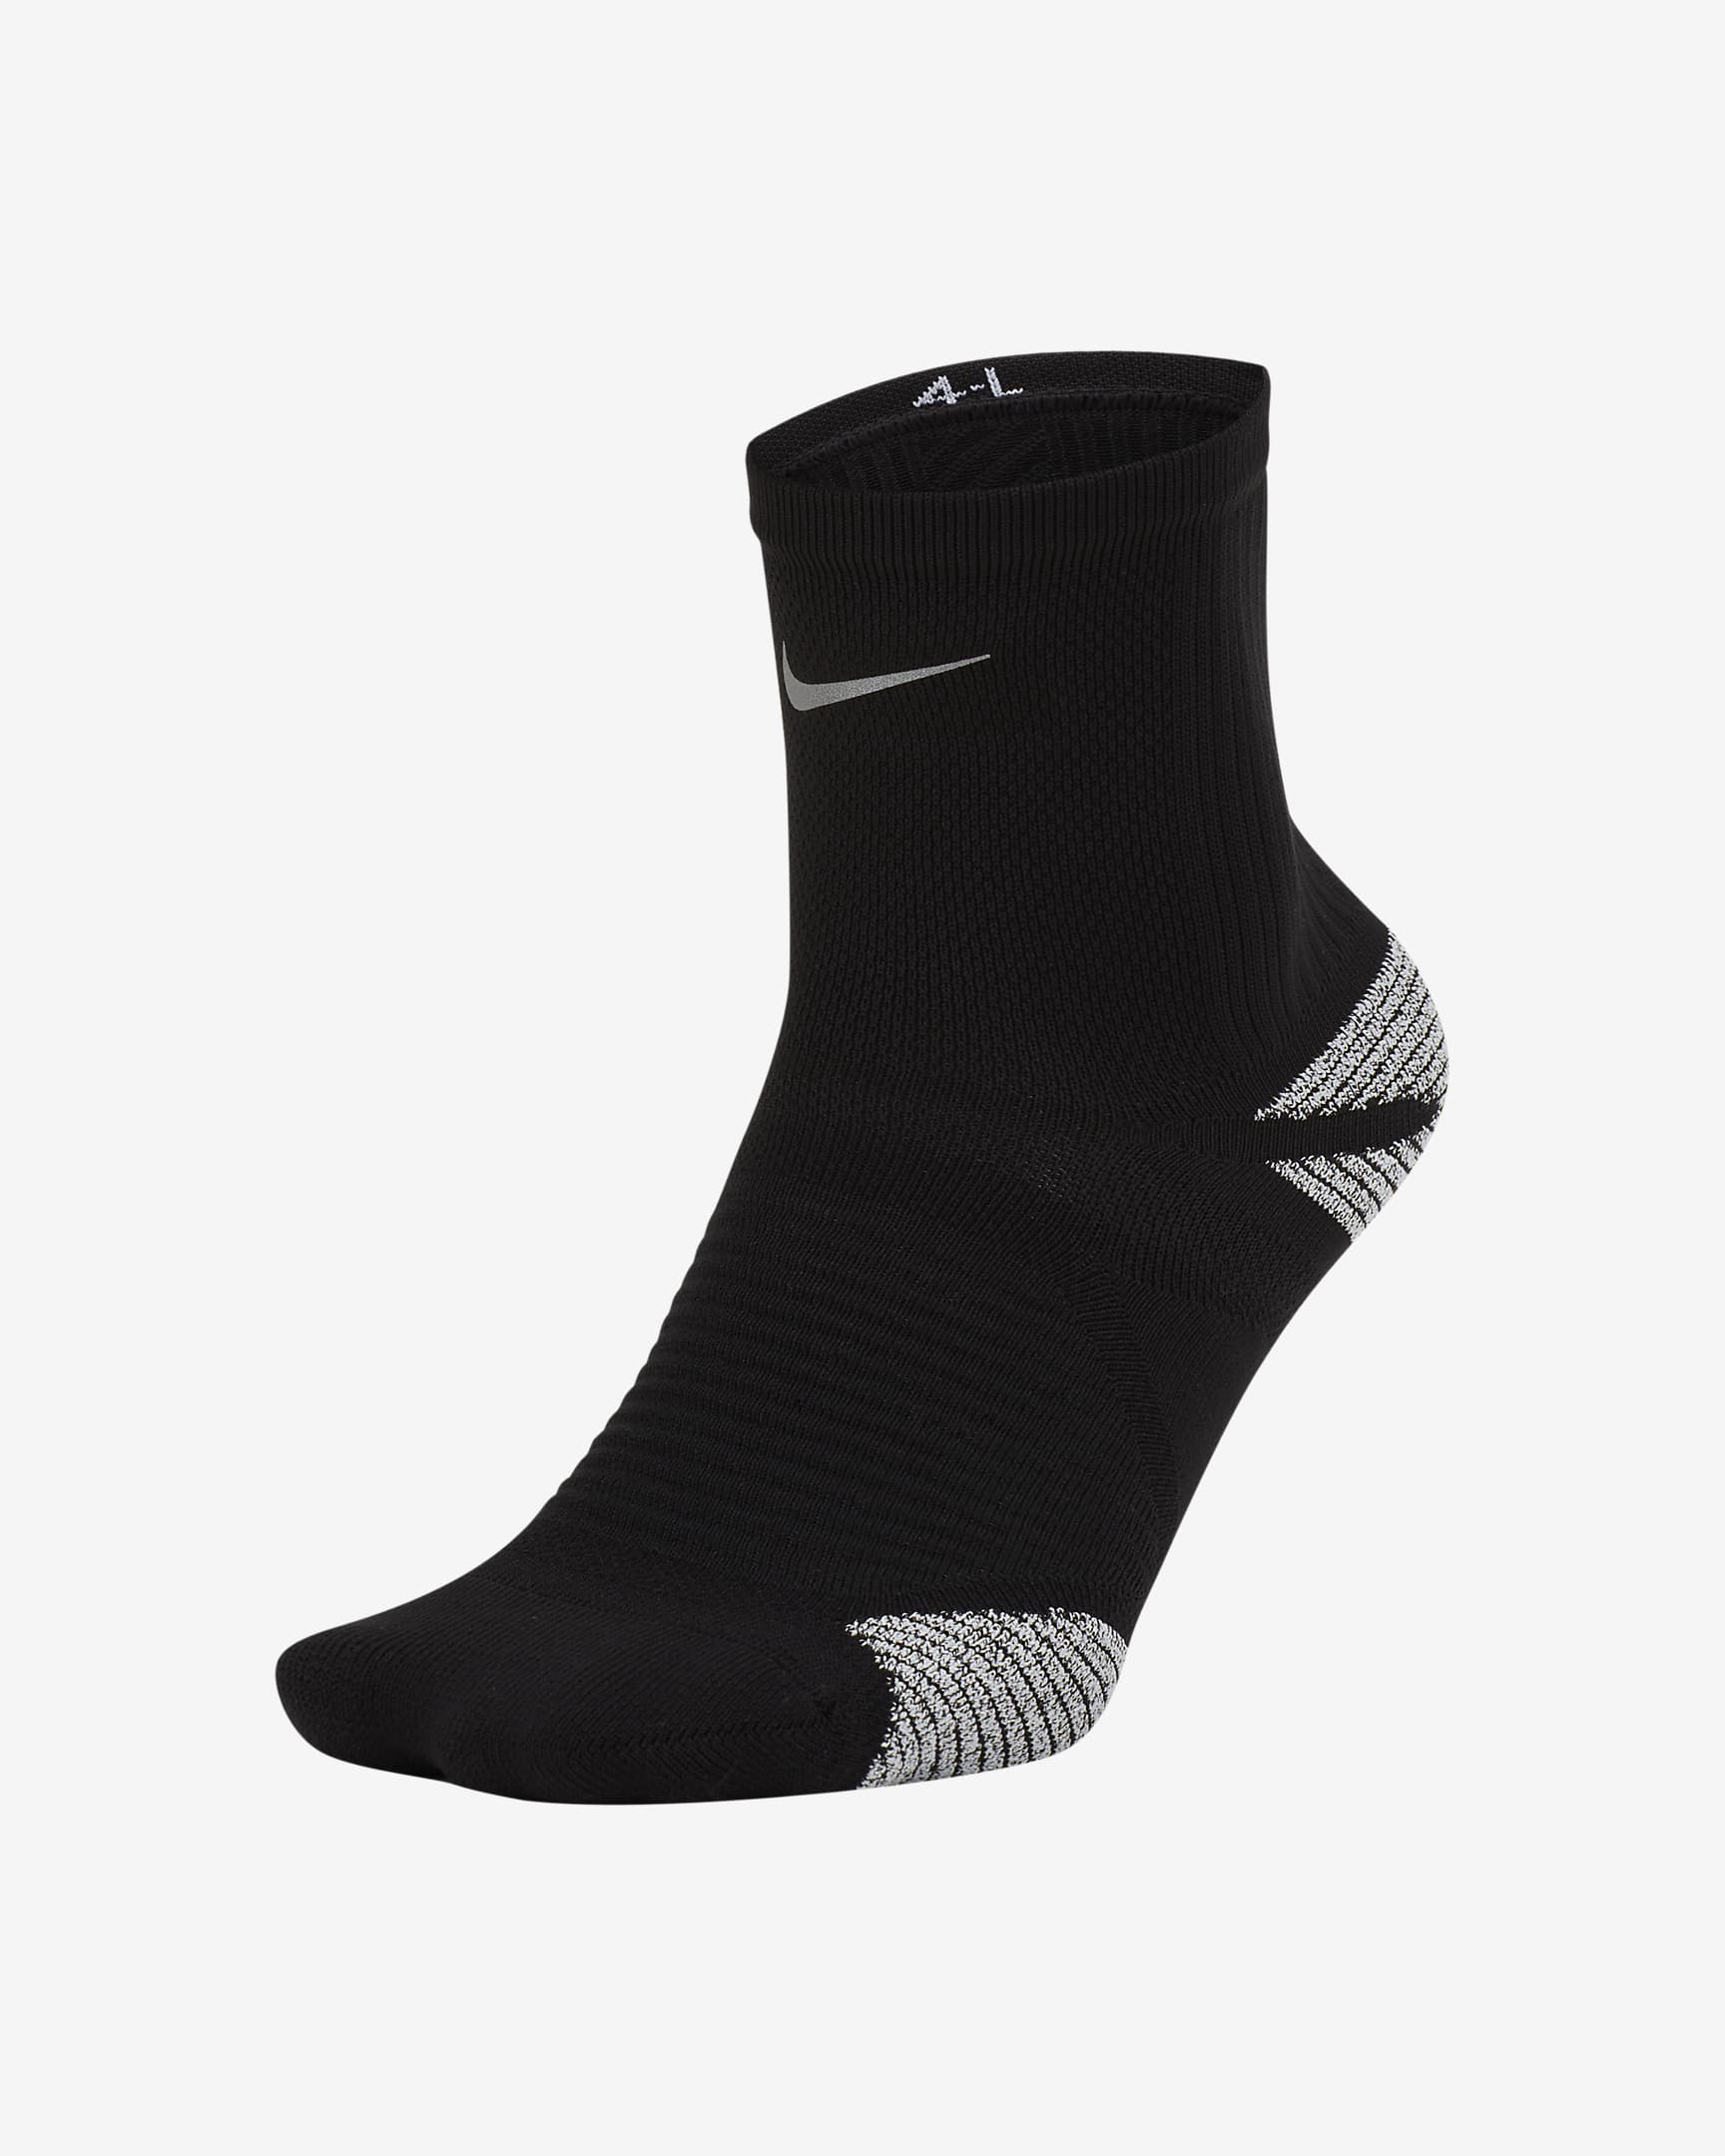 Nike Racing Ankle Socks. Nike VN